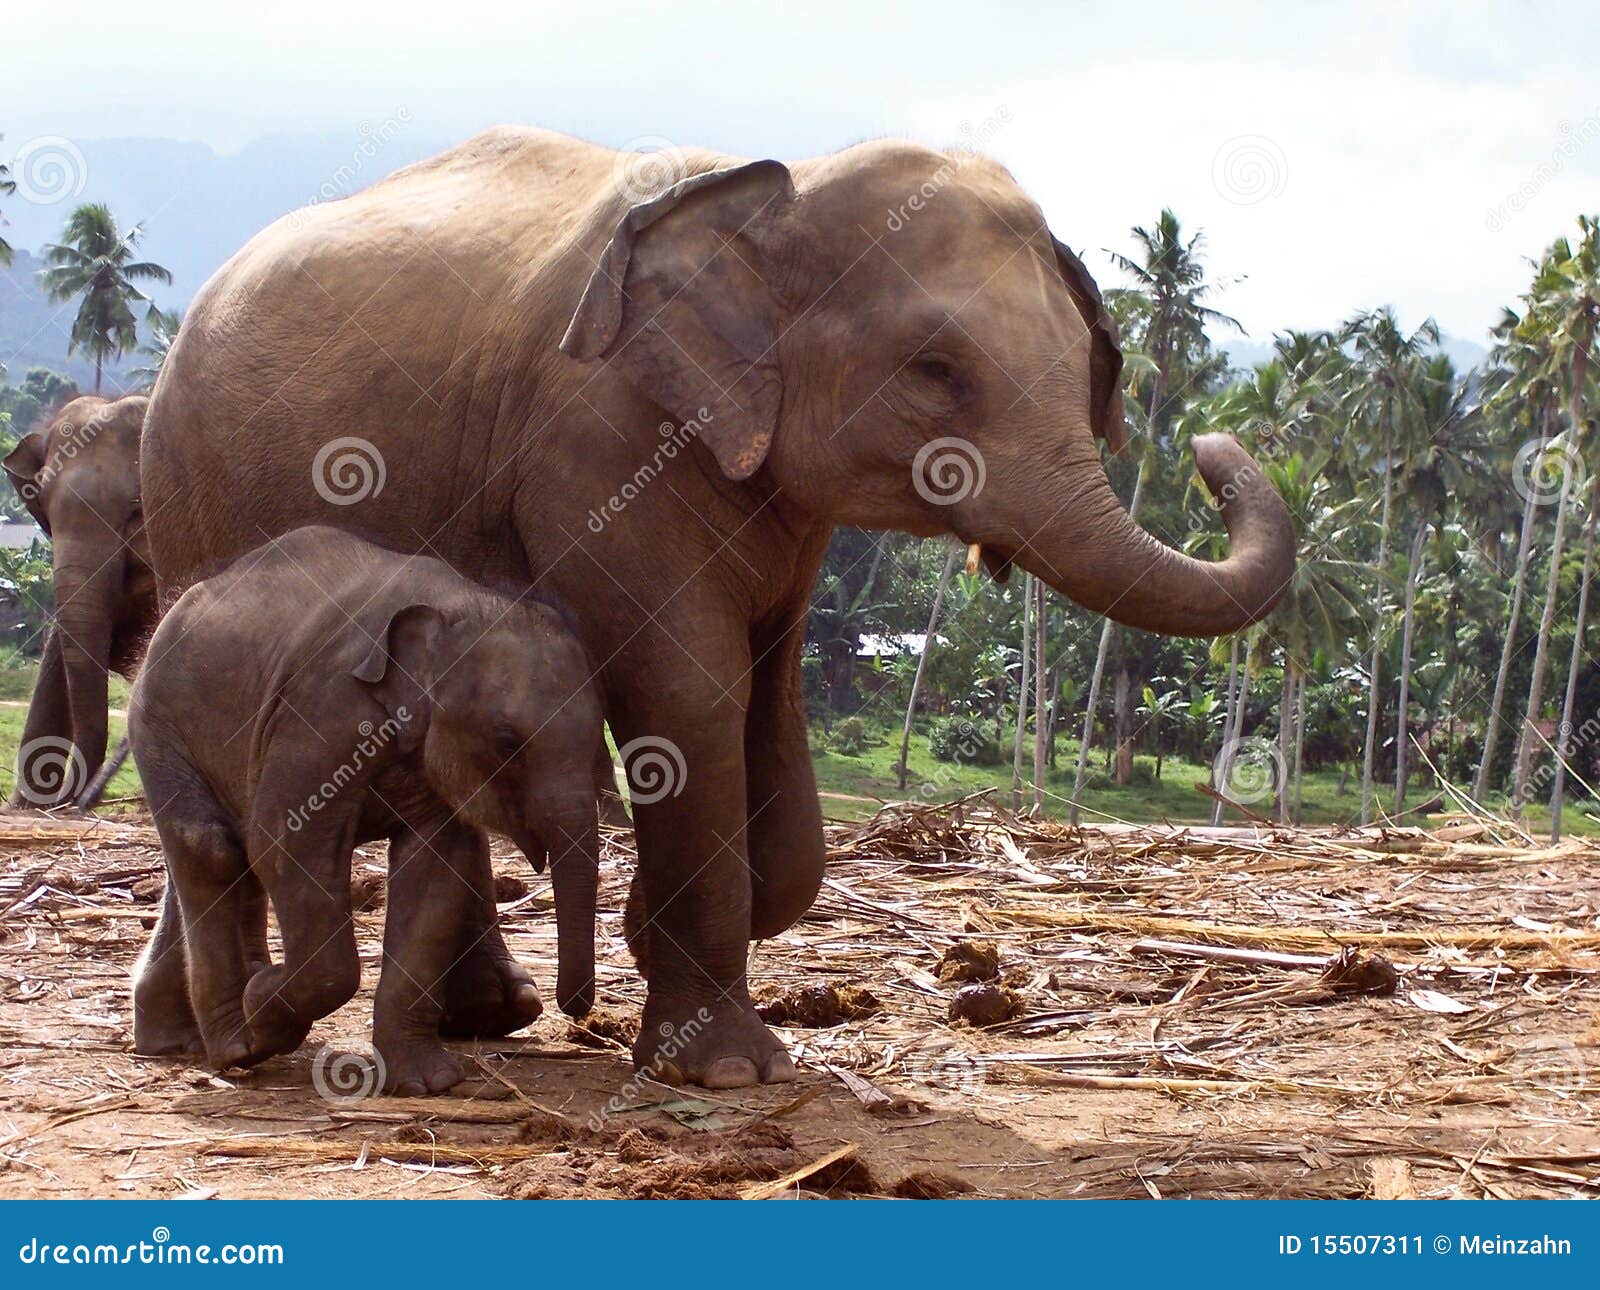 elefant family in open area